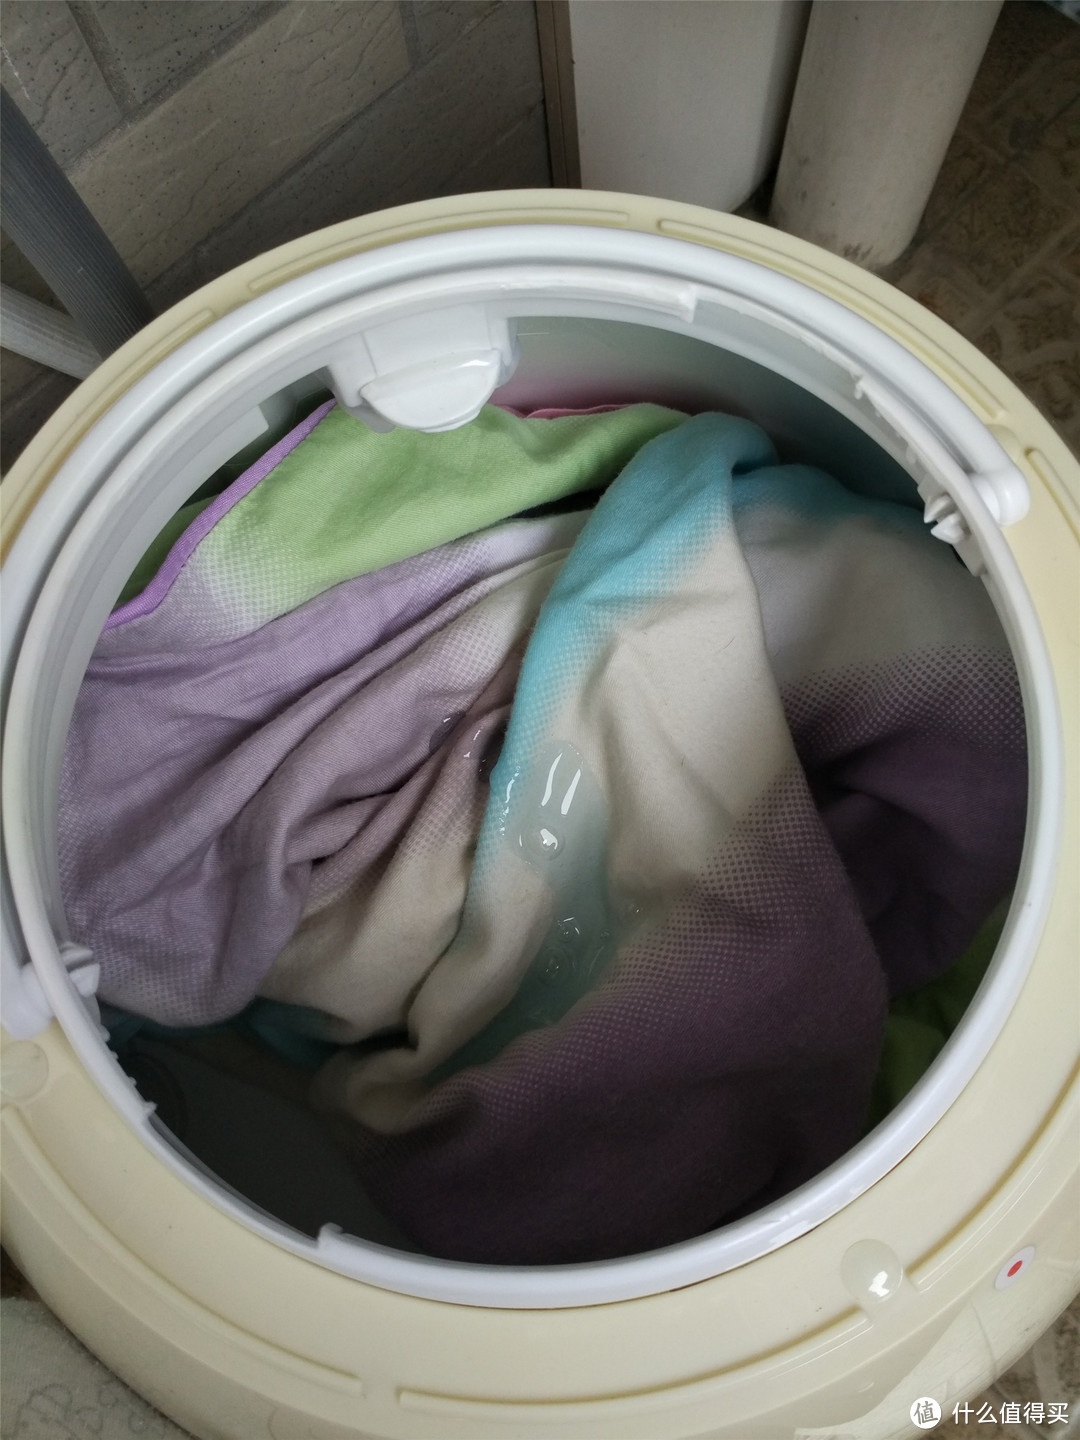 懒人与家有宝贝的洗衣利器 — 洁蛋迷你全自动洗衣机